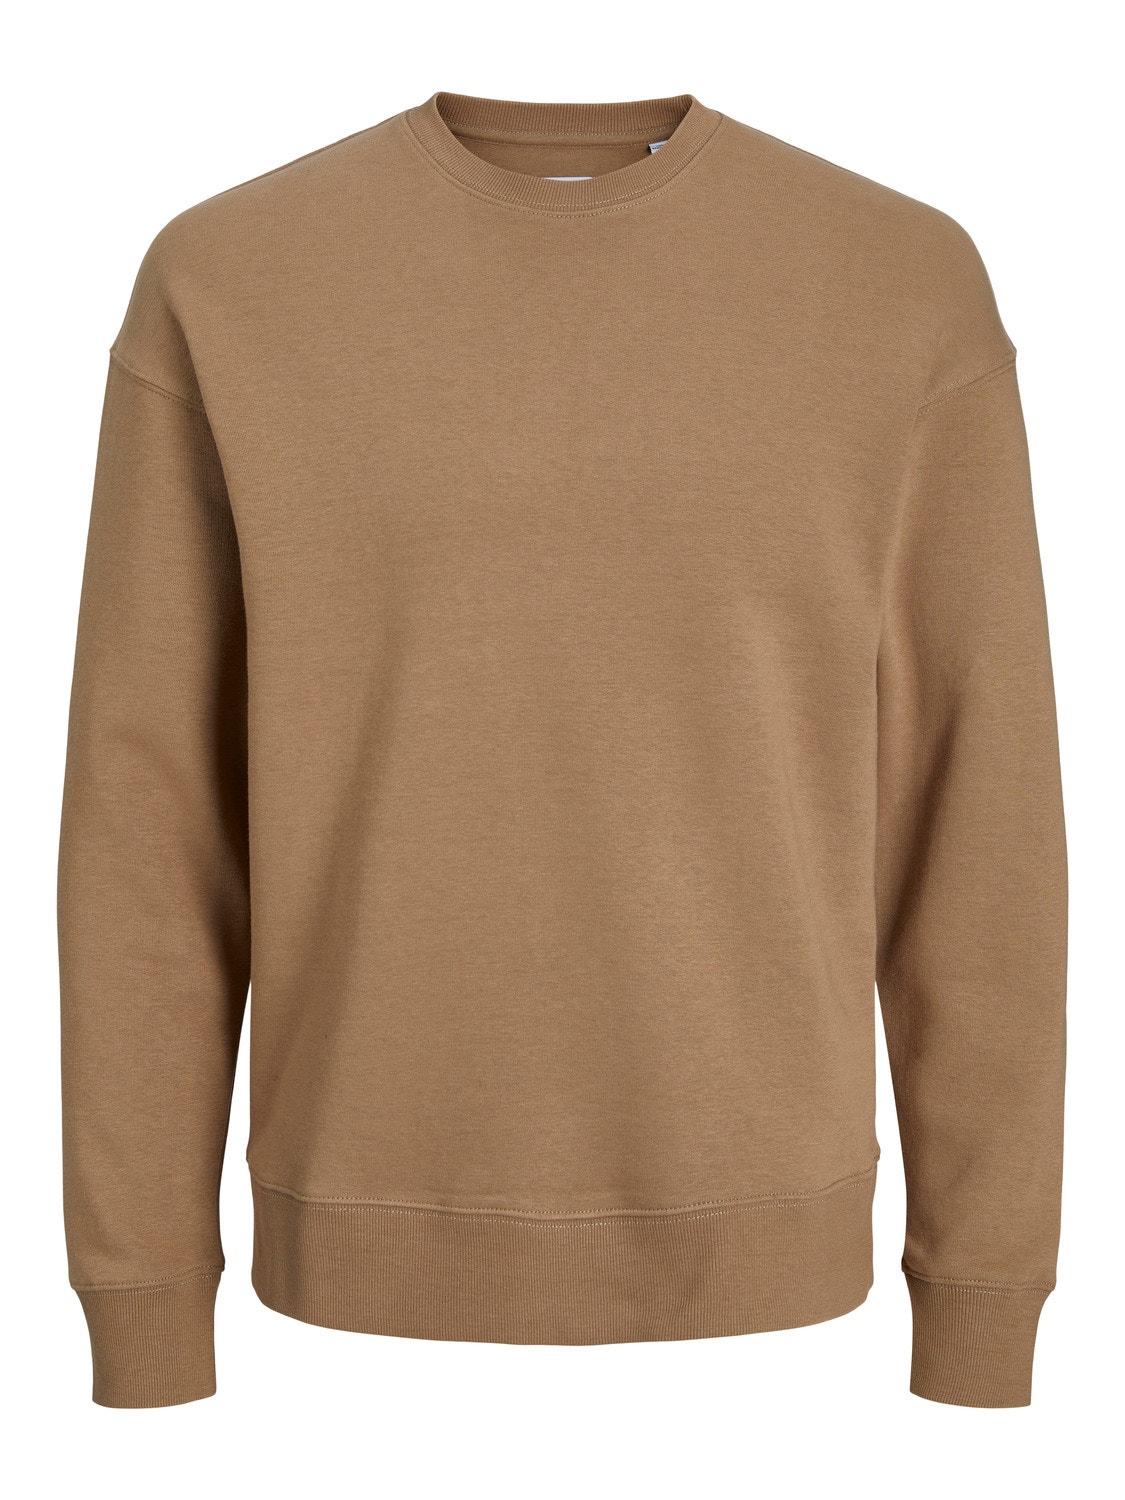 Jack & Jones Plain Crew neck Sweatshirt -Otter - 12208182